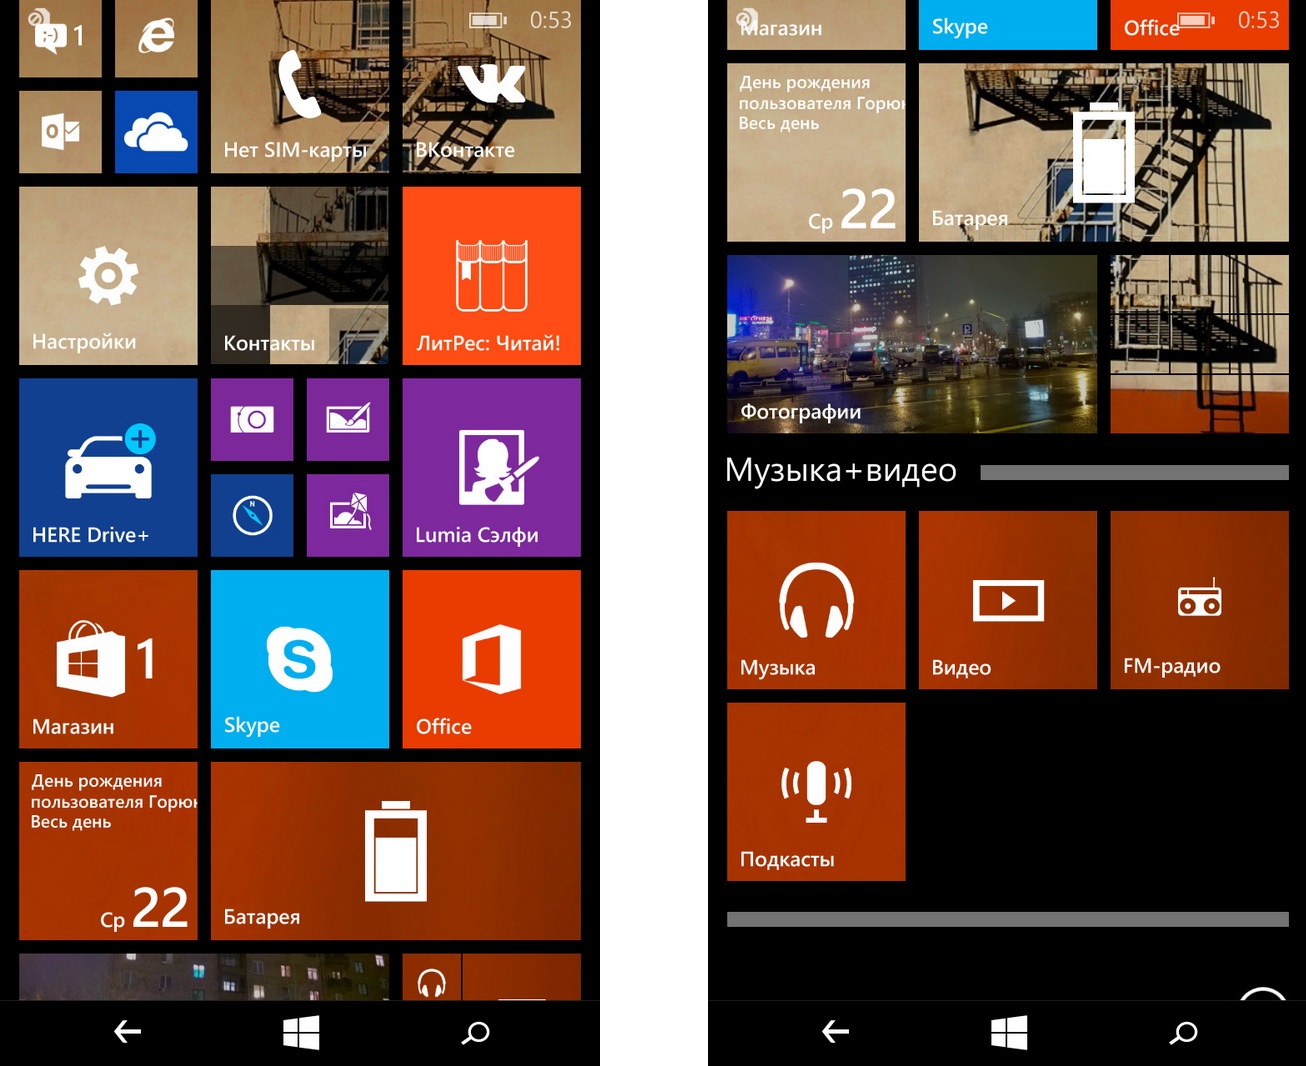 Nokia Lumia 730 - Скриншот